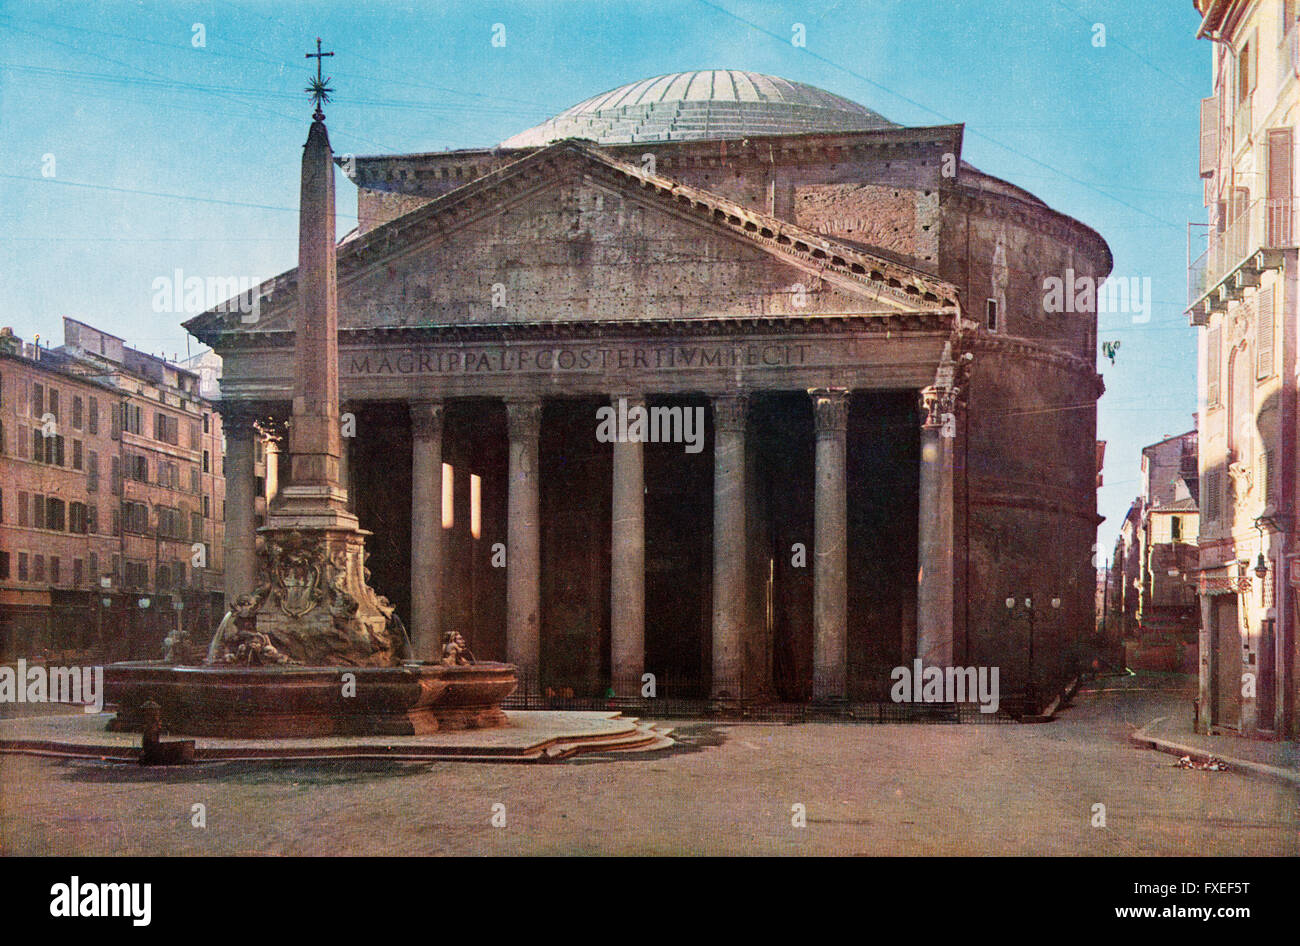 Le Panthéon de la Piazza della Rotonda, Rome, Italie. Photographie du début du xxe siècle. Banque D'Images